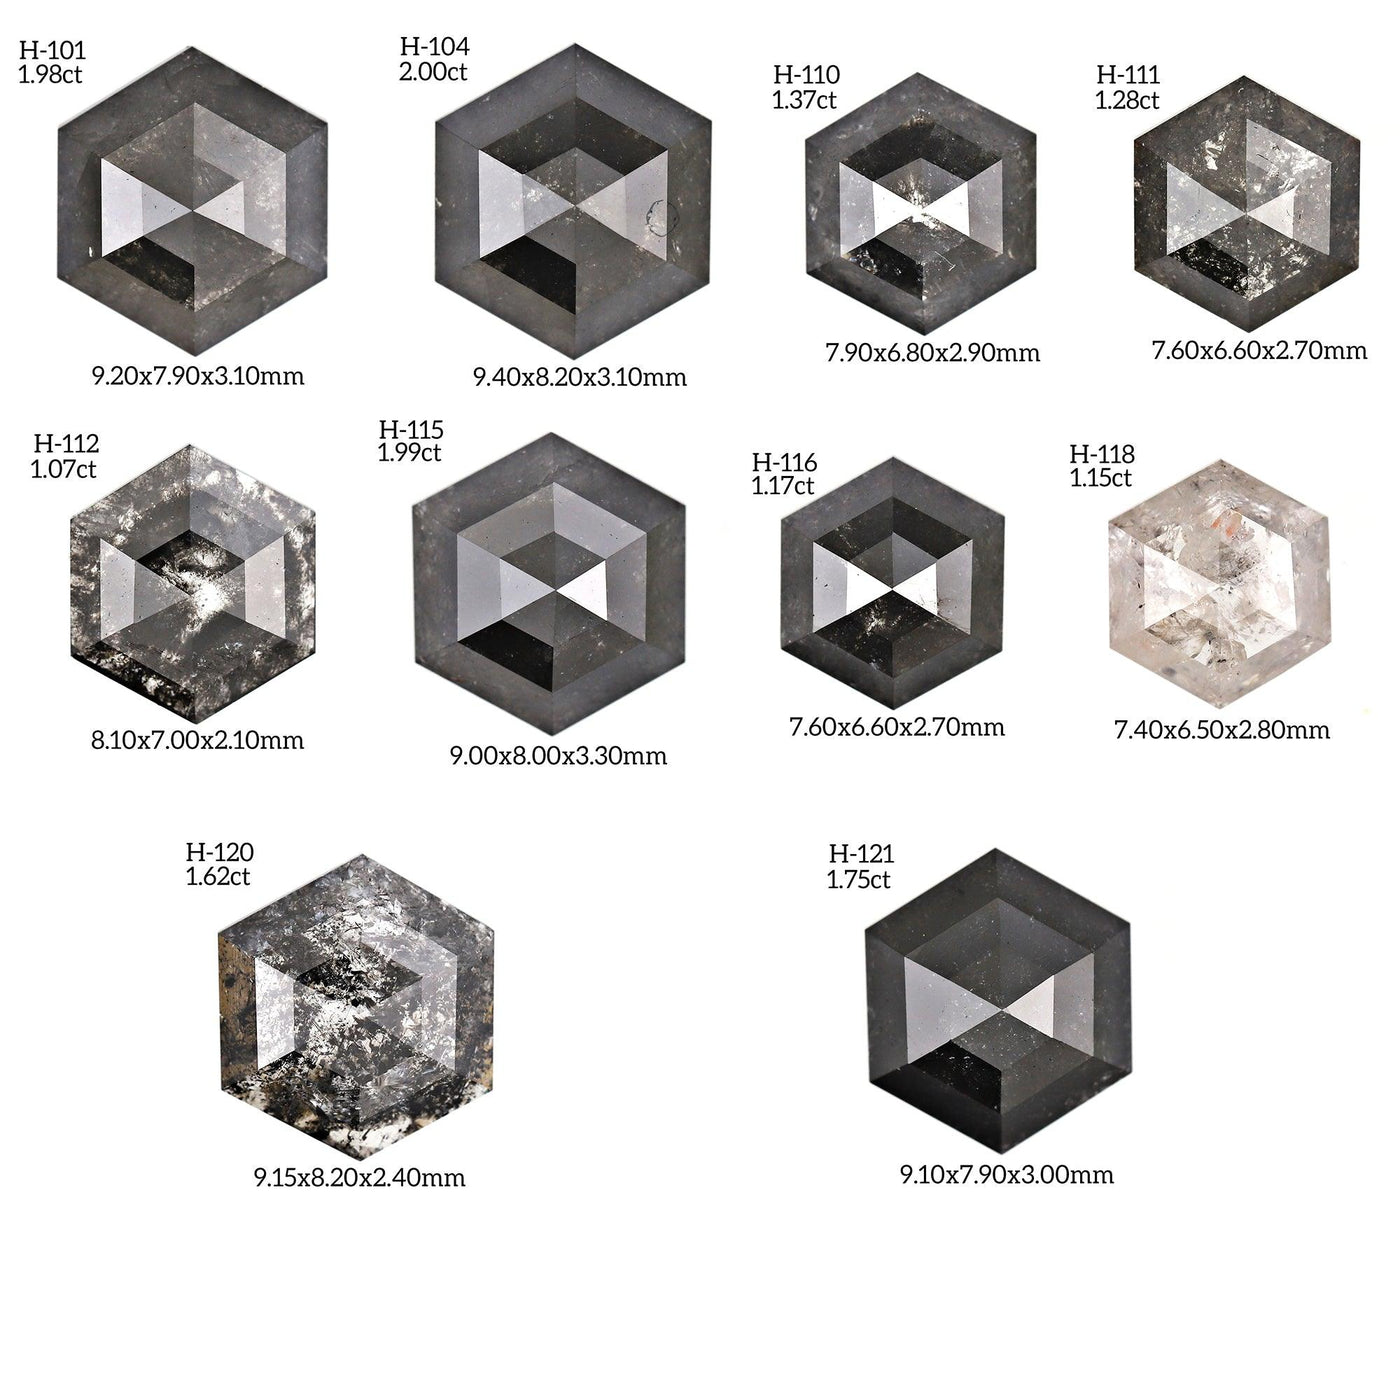 H236 - Salt and pepper hexagon diamond